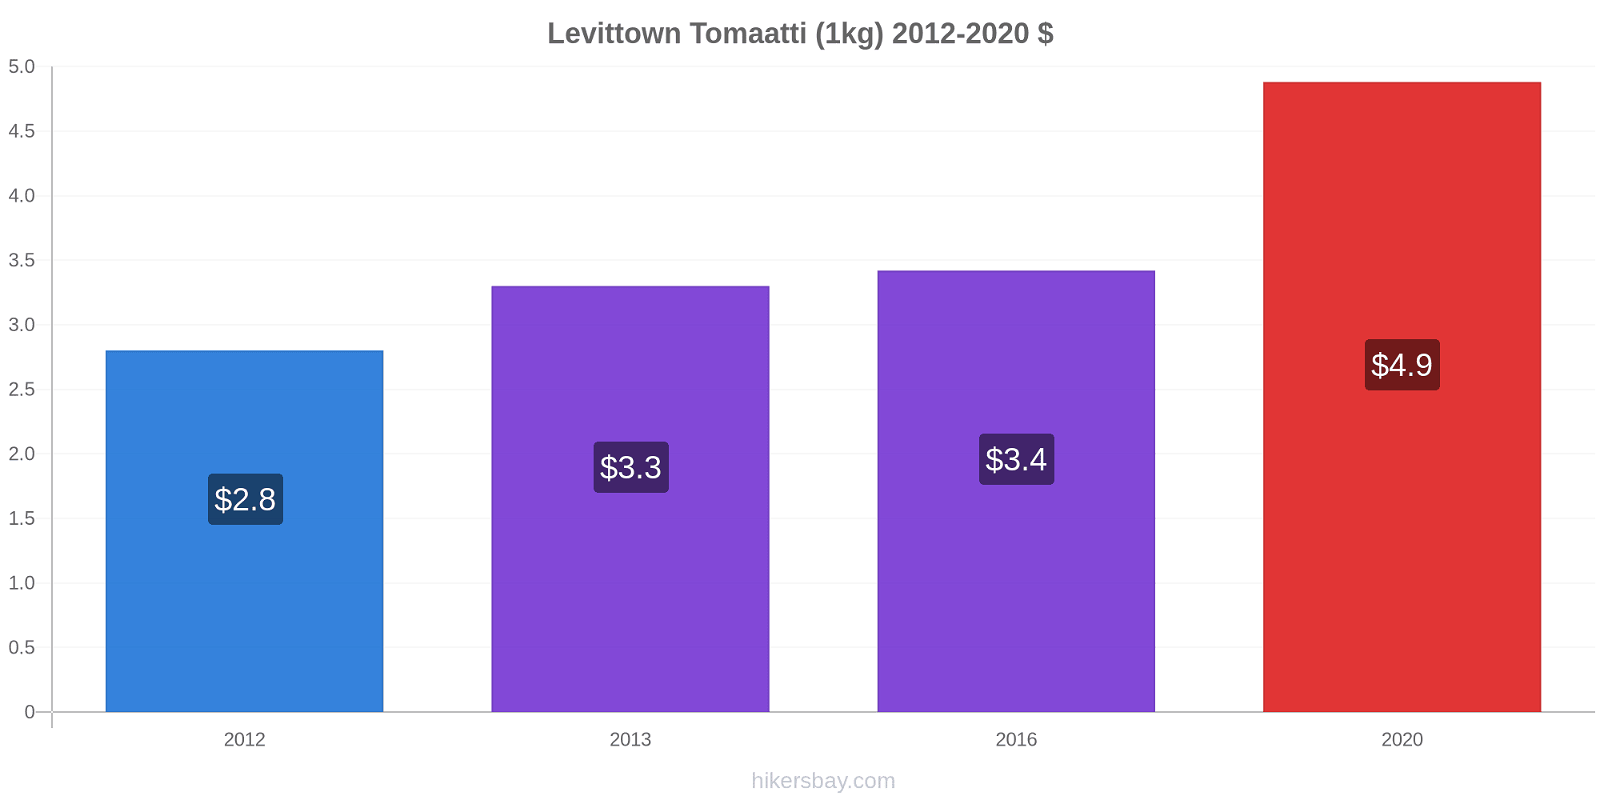 Levittown hintojen muutokset Tomaatti (1kg) hikersbay.com